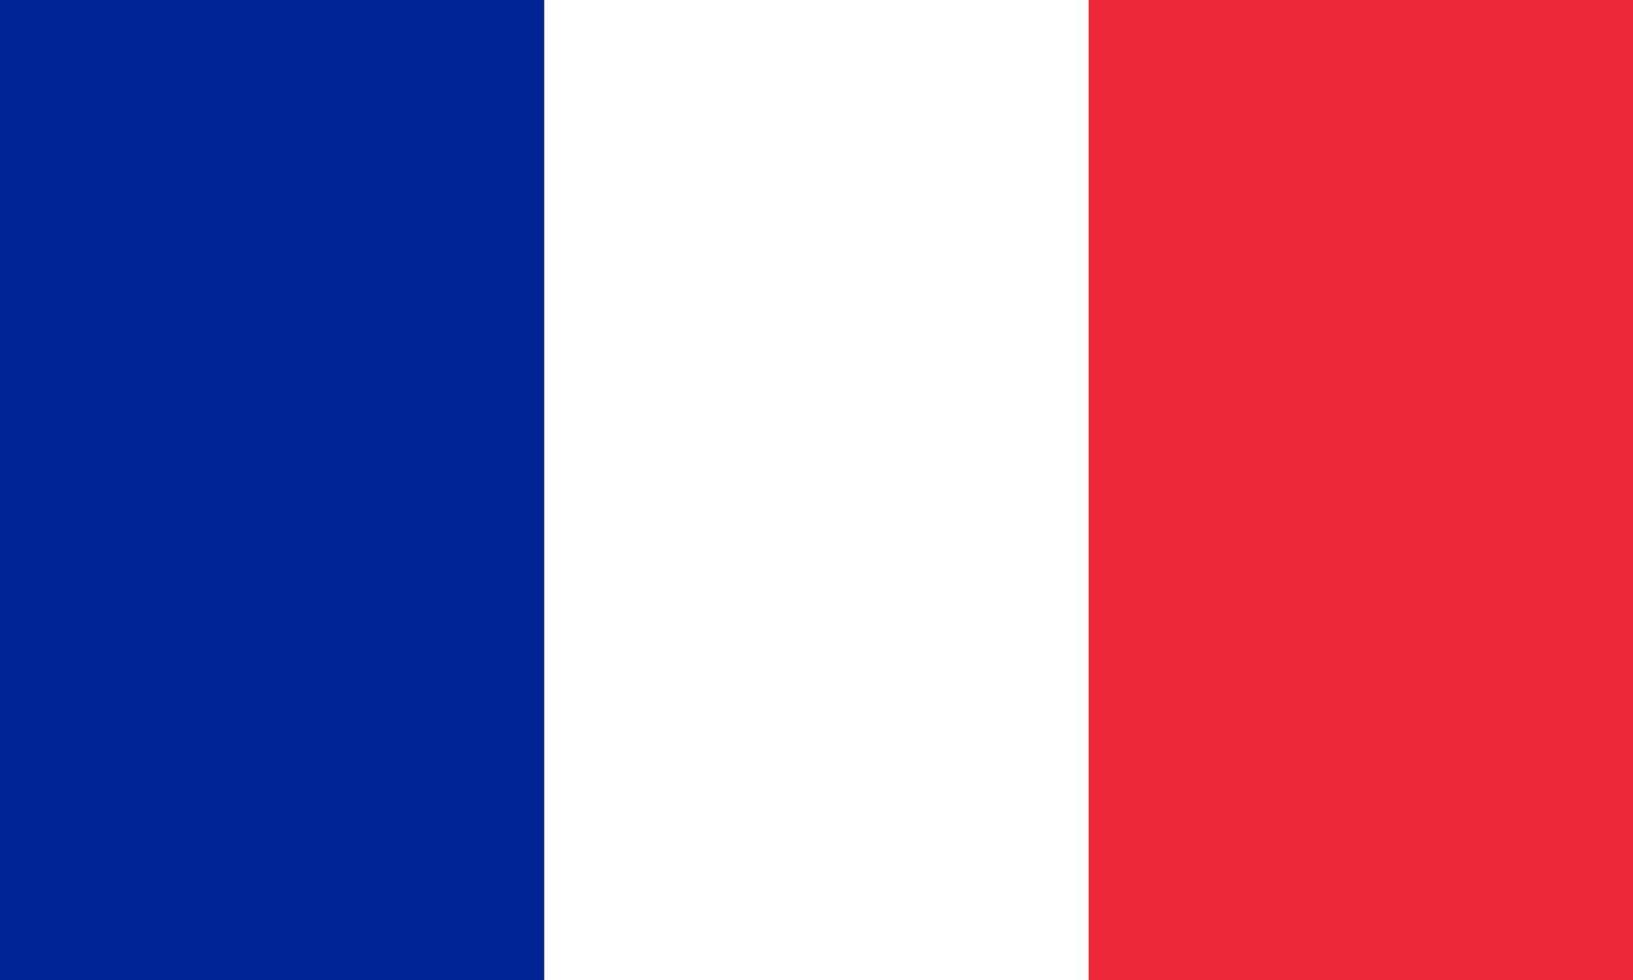 gráfico de vetor da bandeira da França. retângulo ilustração da bandeira francesa. A bandeira do país da França é um símbolo de liberdade, patriotismo e independência.